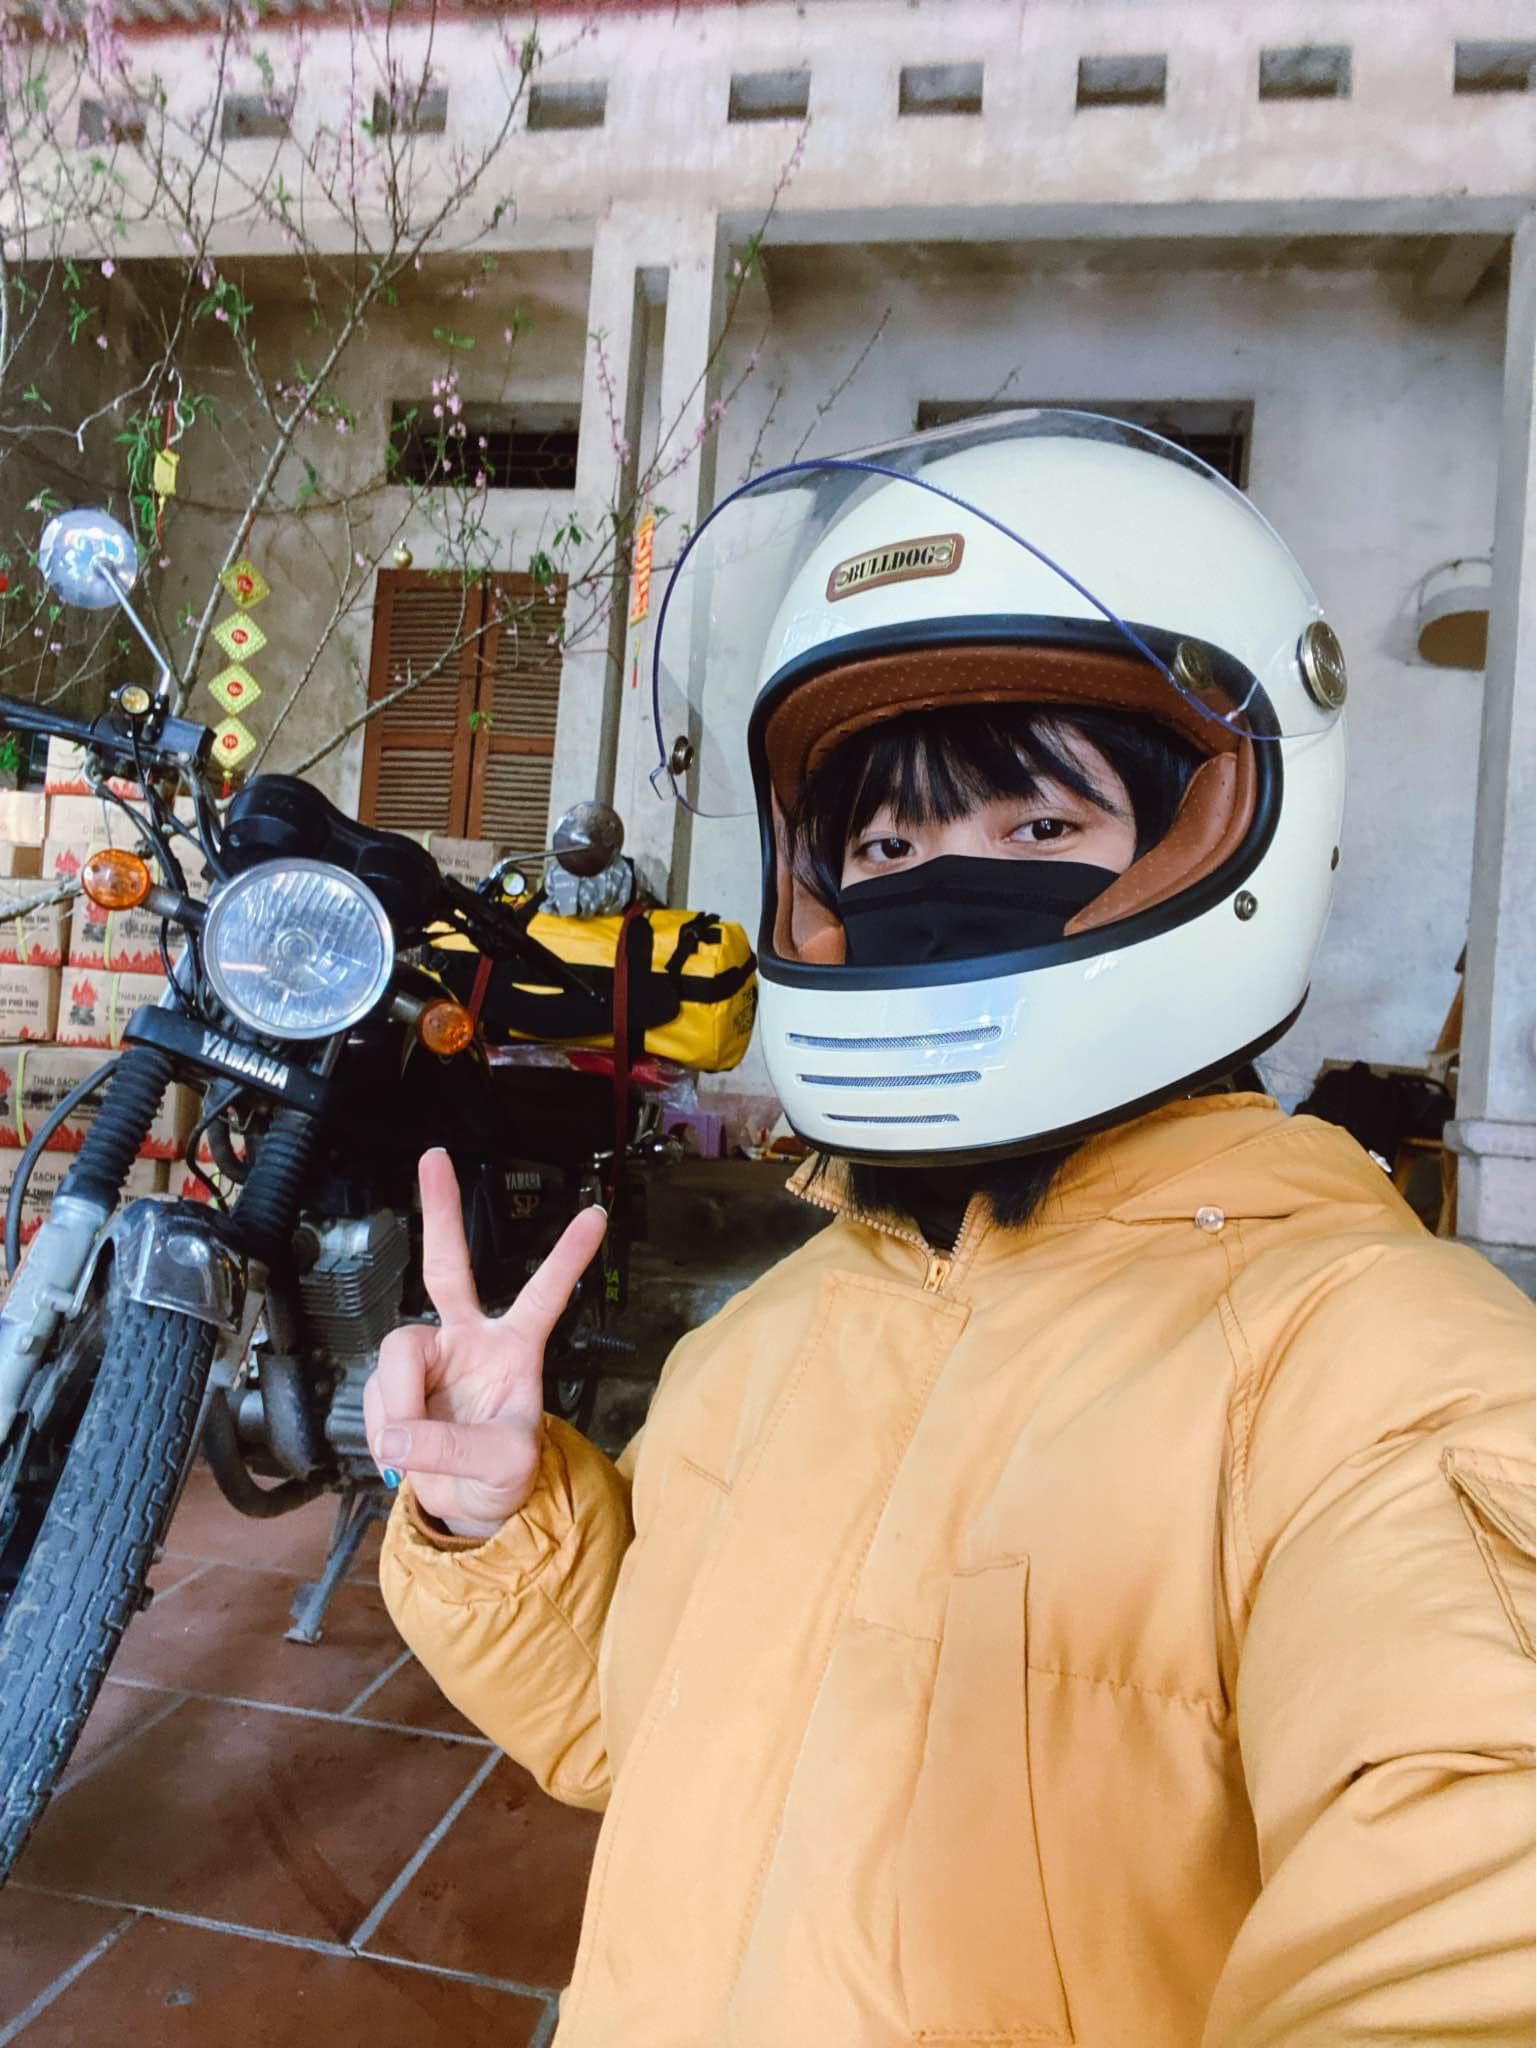 Đón tuổi 25, nàng GenZ quyết định thực hiện chuyến đi để đời: Phượt xe máy xuyên Việt một mình - Ảnh 4.